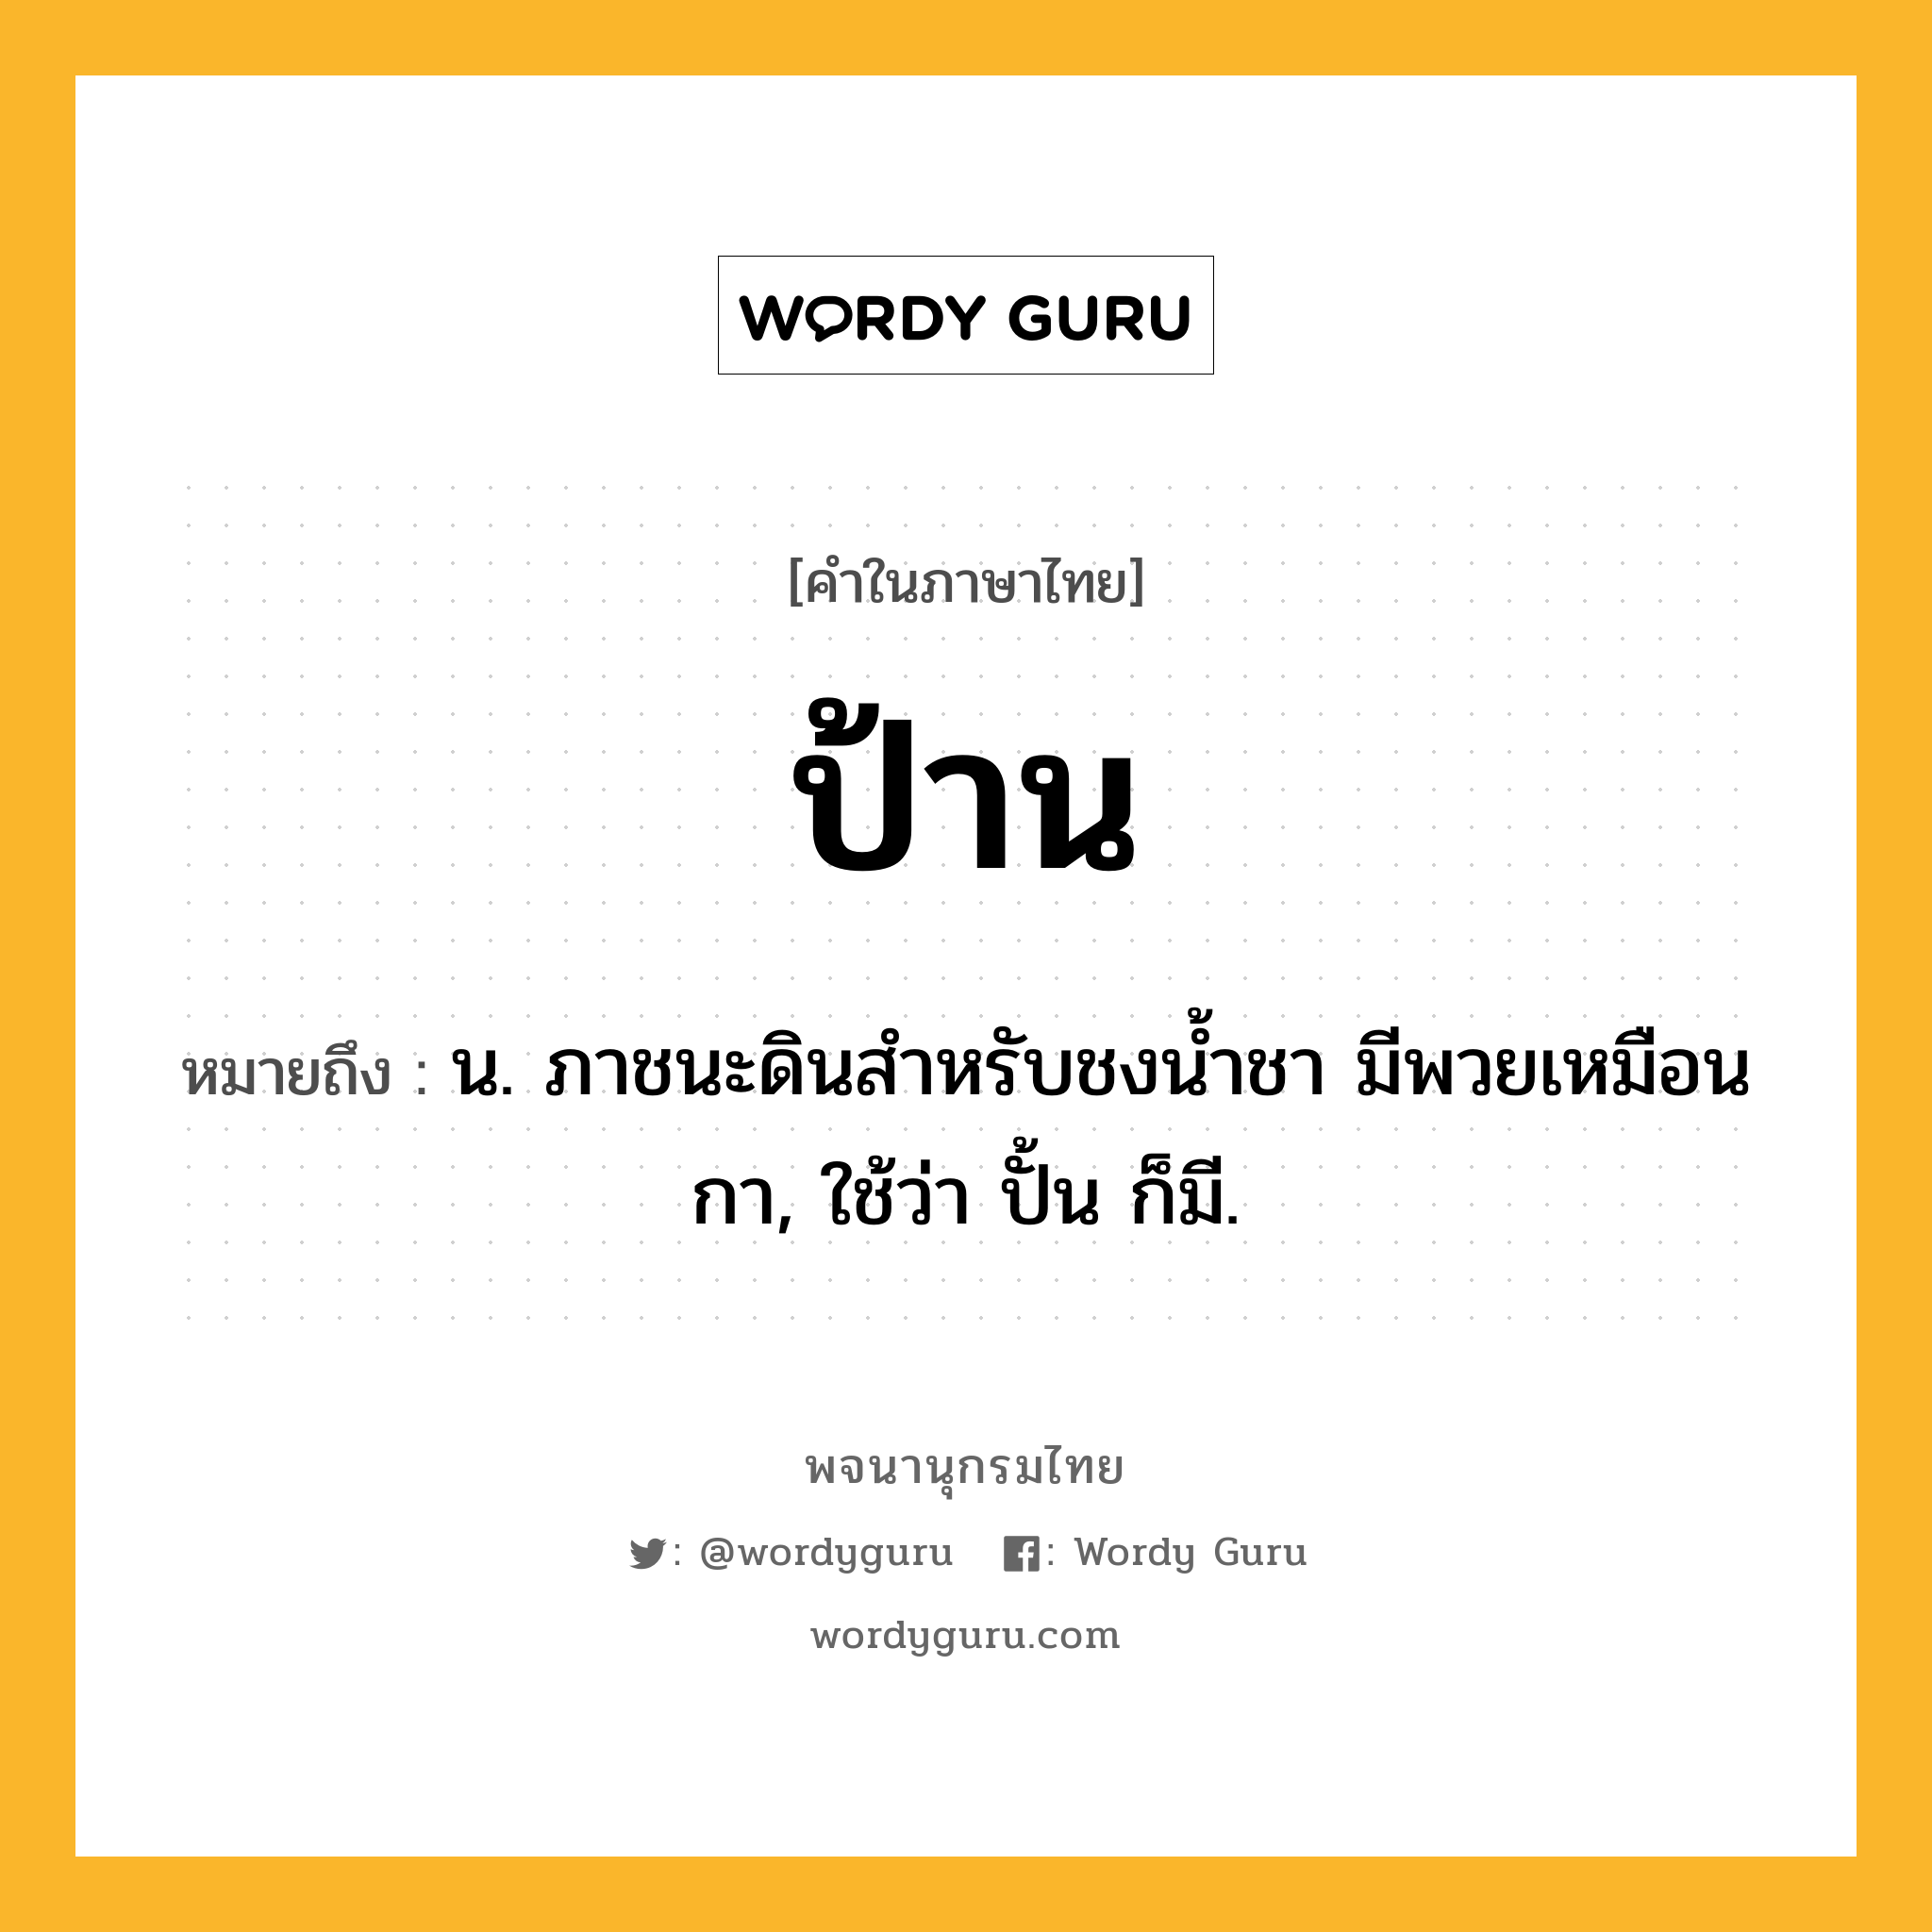 ป้าน ความหมาย หมายถึงอะไร?, คำในภาษาไทย ป้าน หมายถึง น. ภาชนะดินสําหรับชงนํ้าชา มีพวยเหมือนกา, ใช้ว่า ปั้น ก็มี.